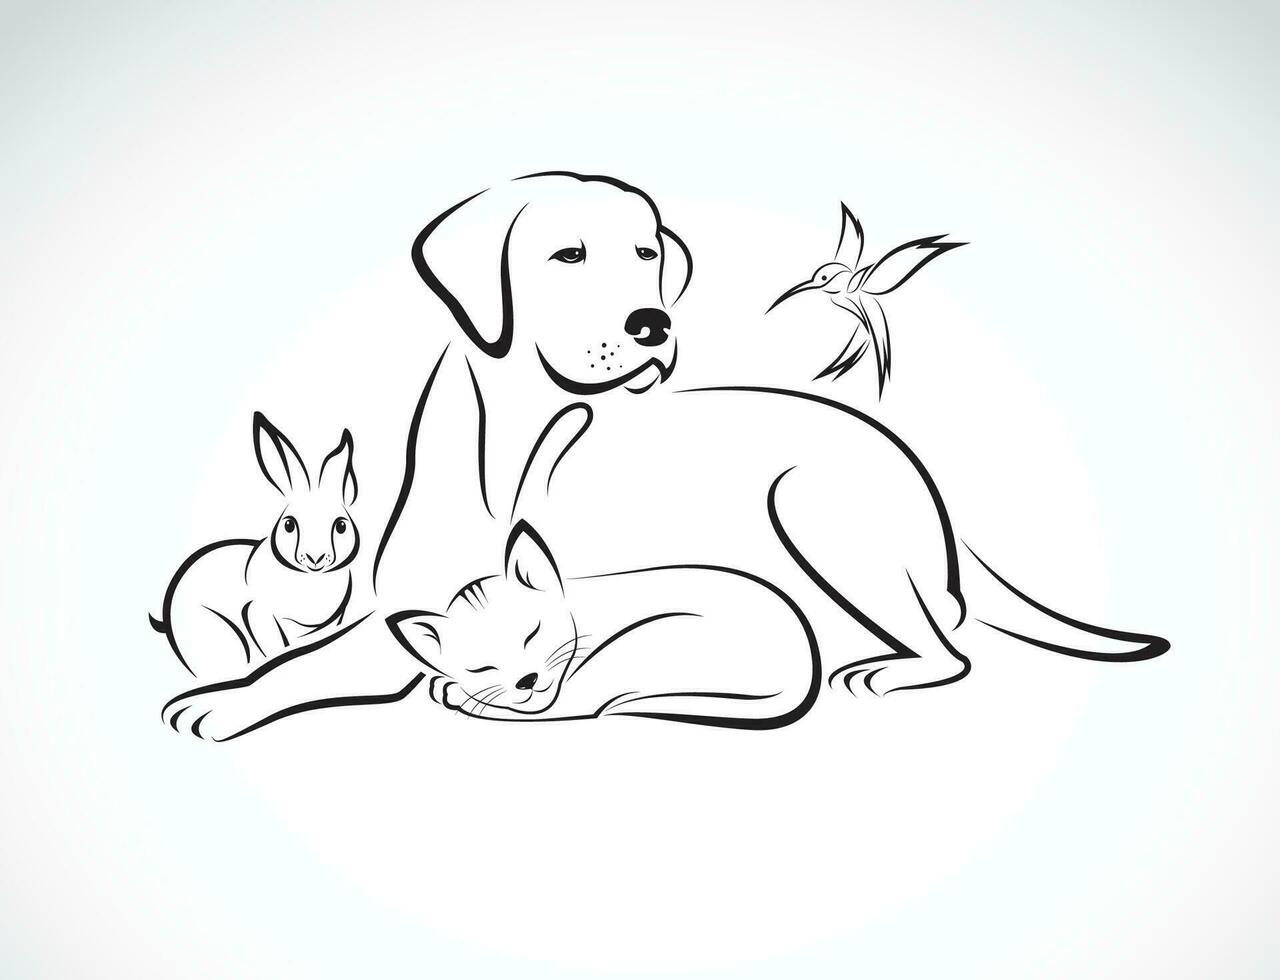 vektor grupp av husdjur - hund, katt, fågel, kanin, isolerat på vit bakgrund